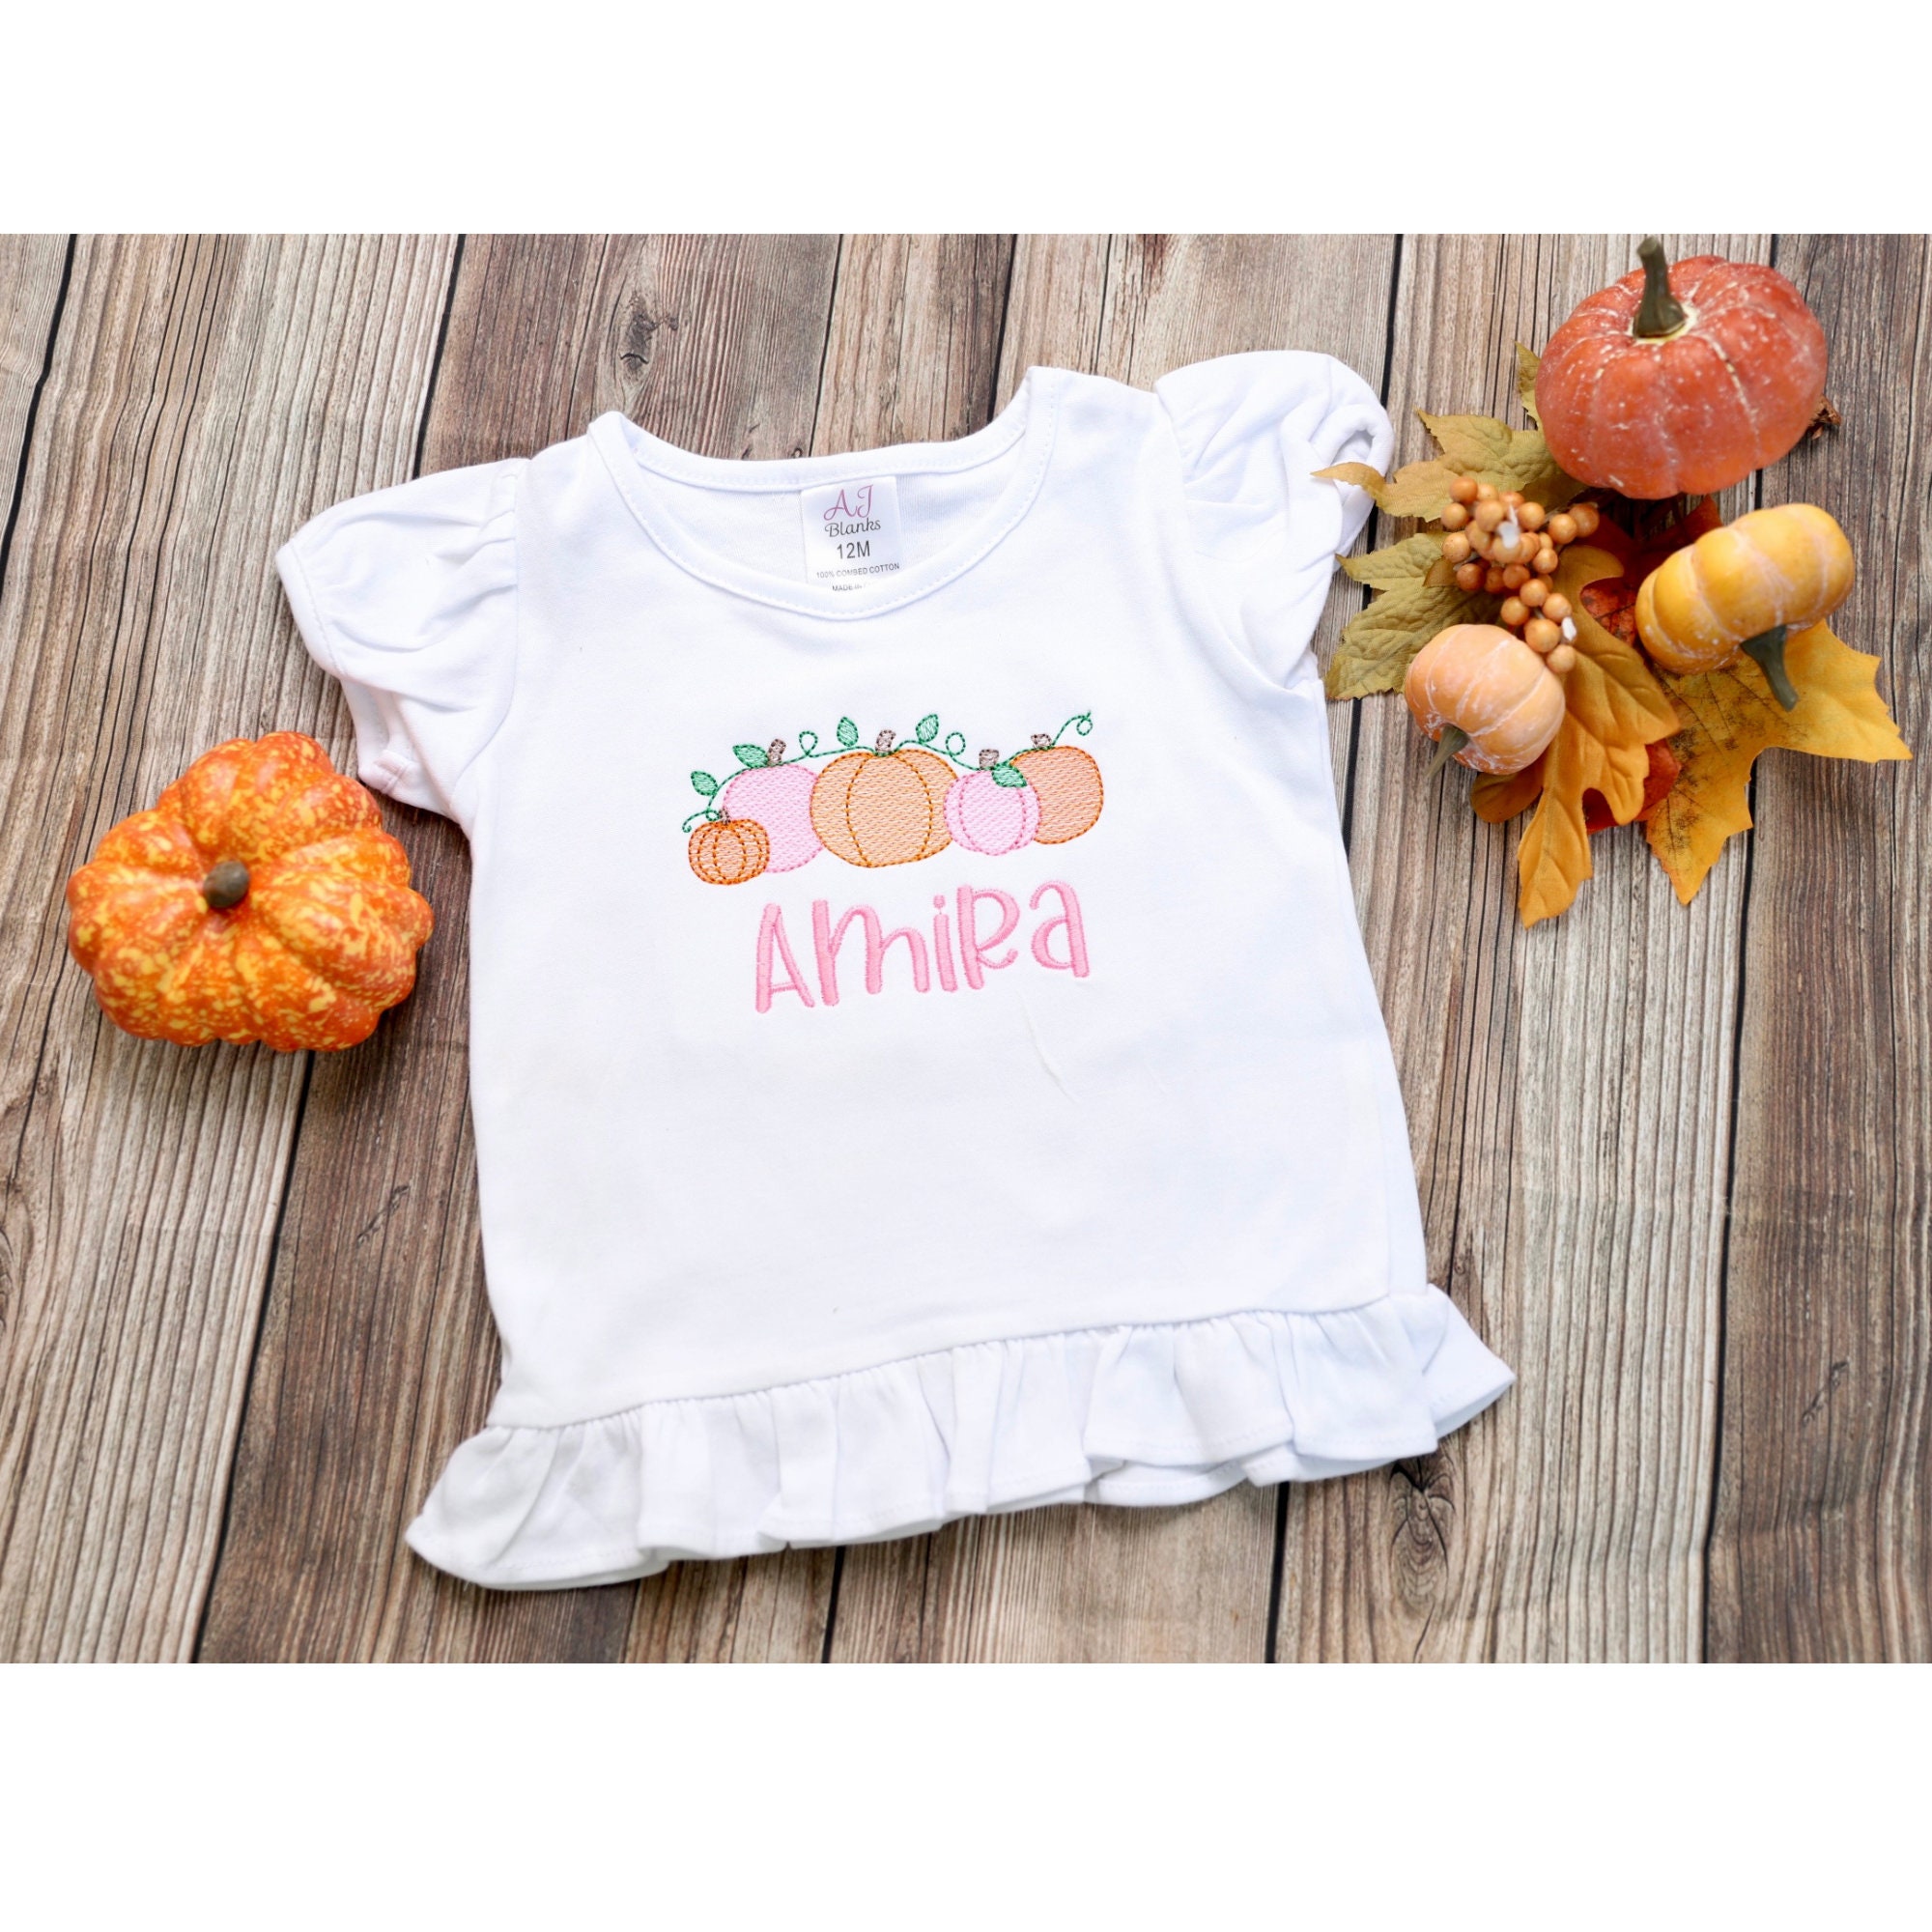 Discover Pumpkin Shirt, Personalized Pumpkin Shirt, Pumpkin Patch Shirt, Personalized Pumpkin Toddler Shirt, Custom Fall Shirt, Fall Toddler Shirt